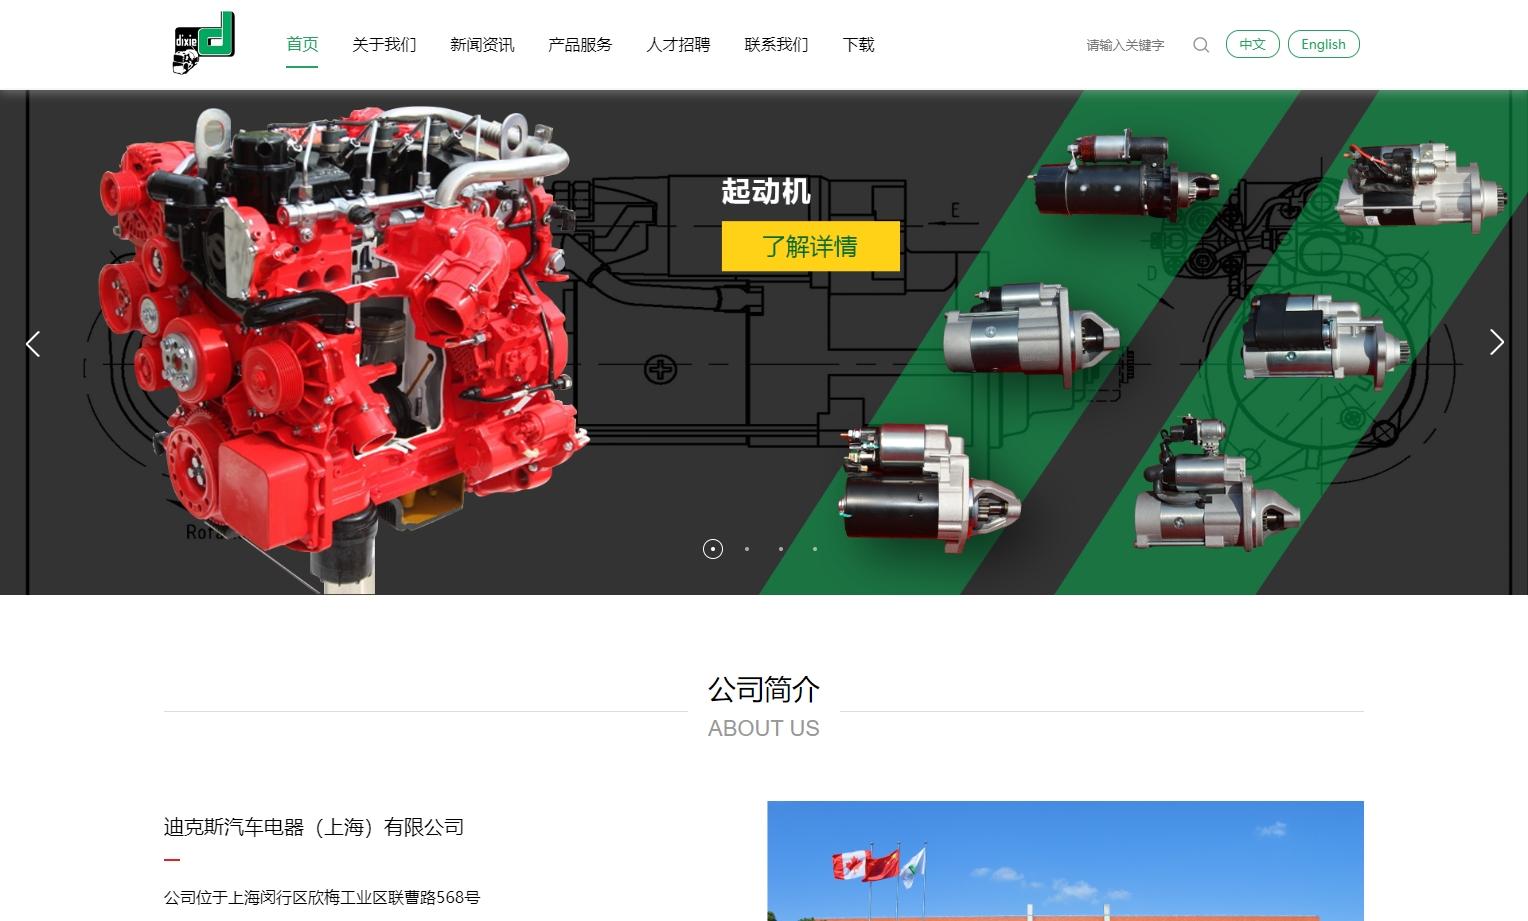 迪克斯汽车电器(上海)有限公司